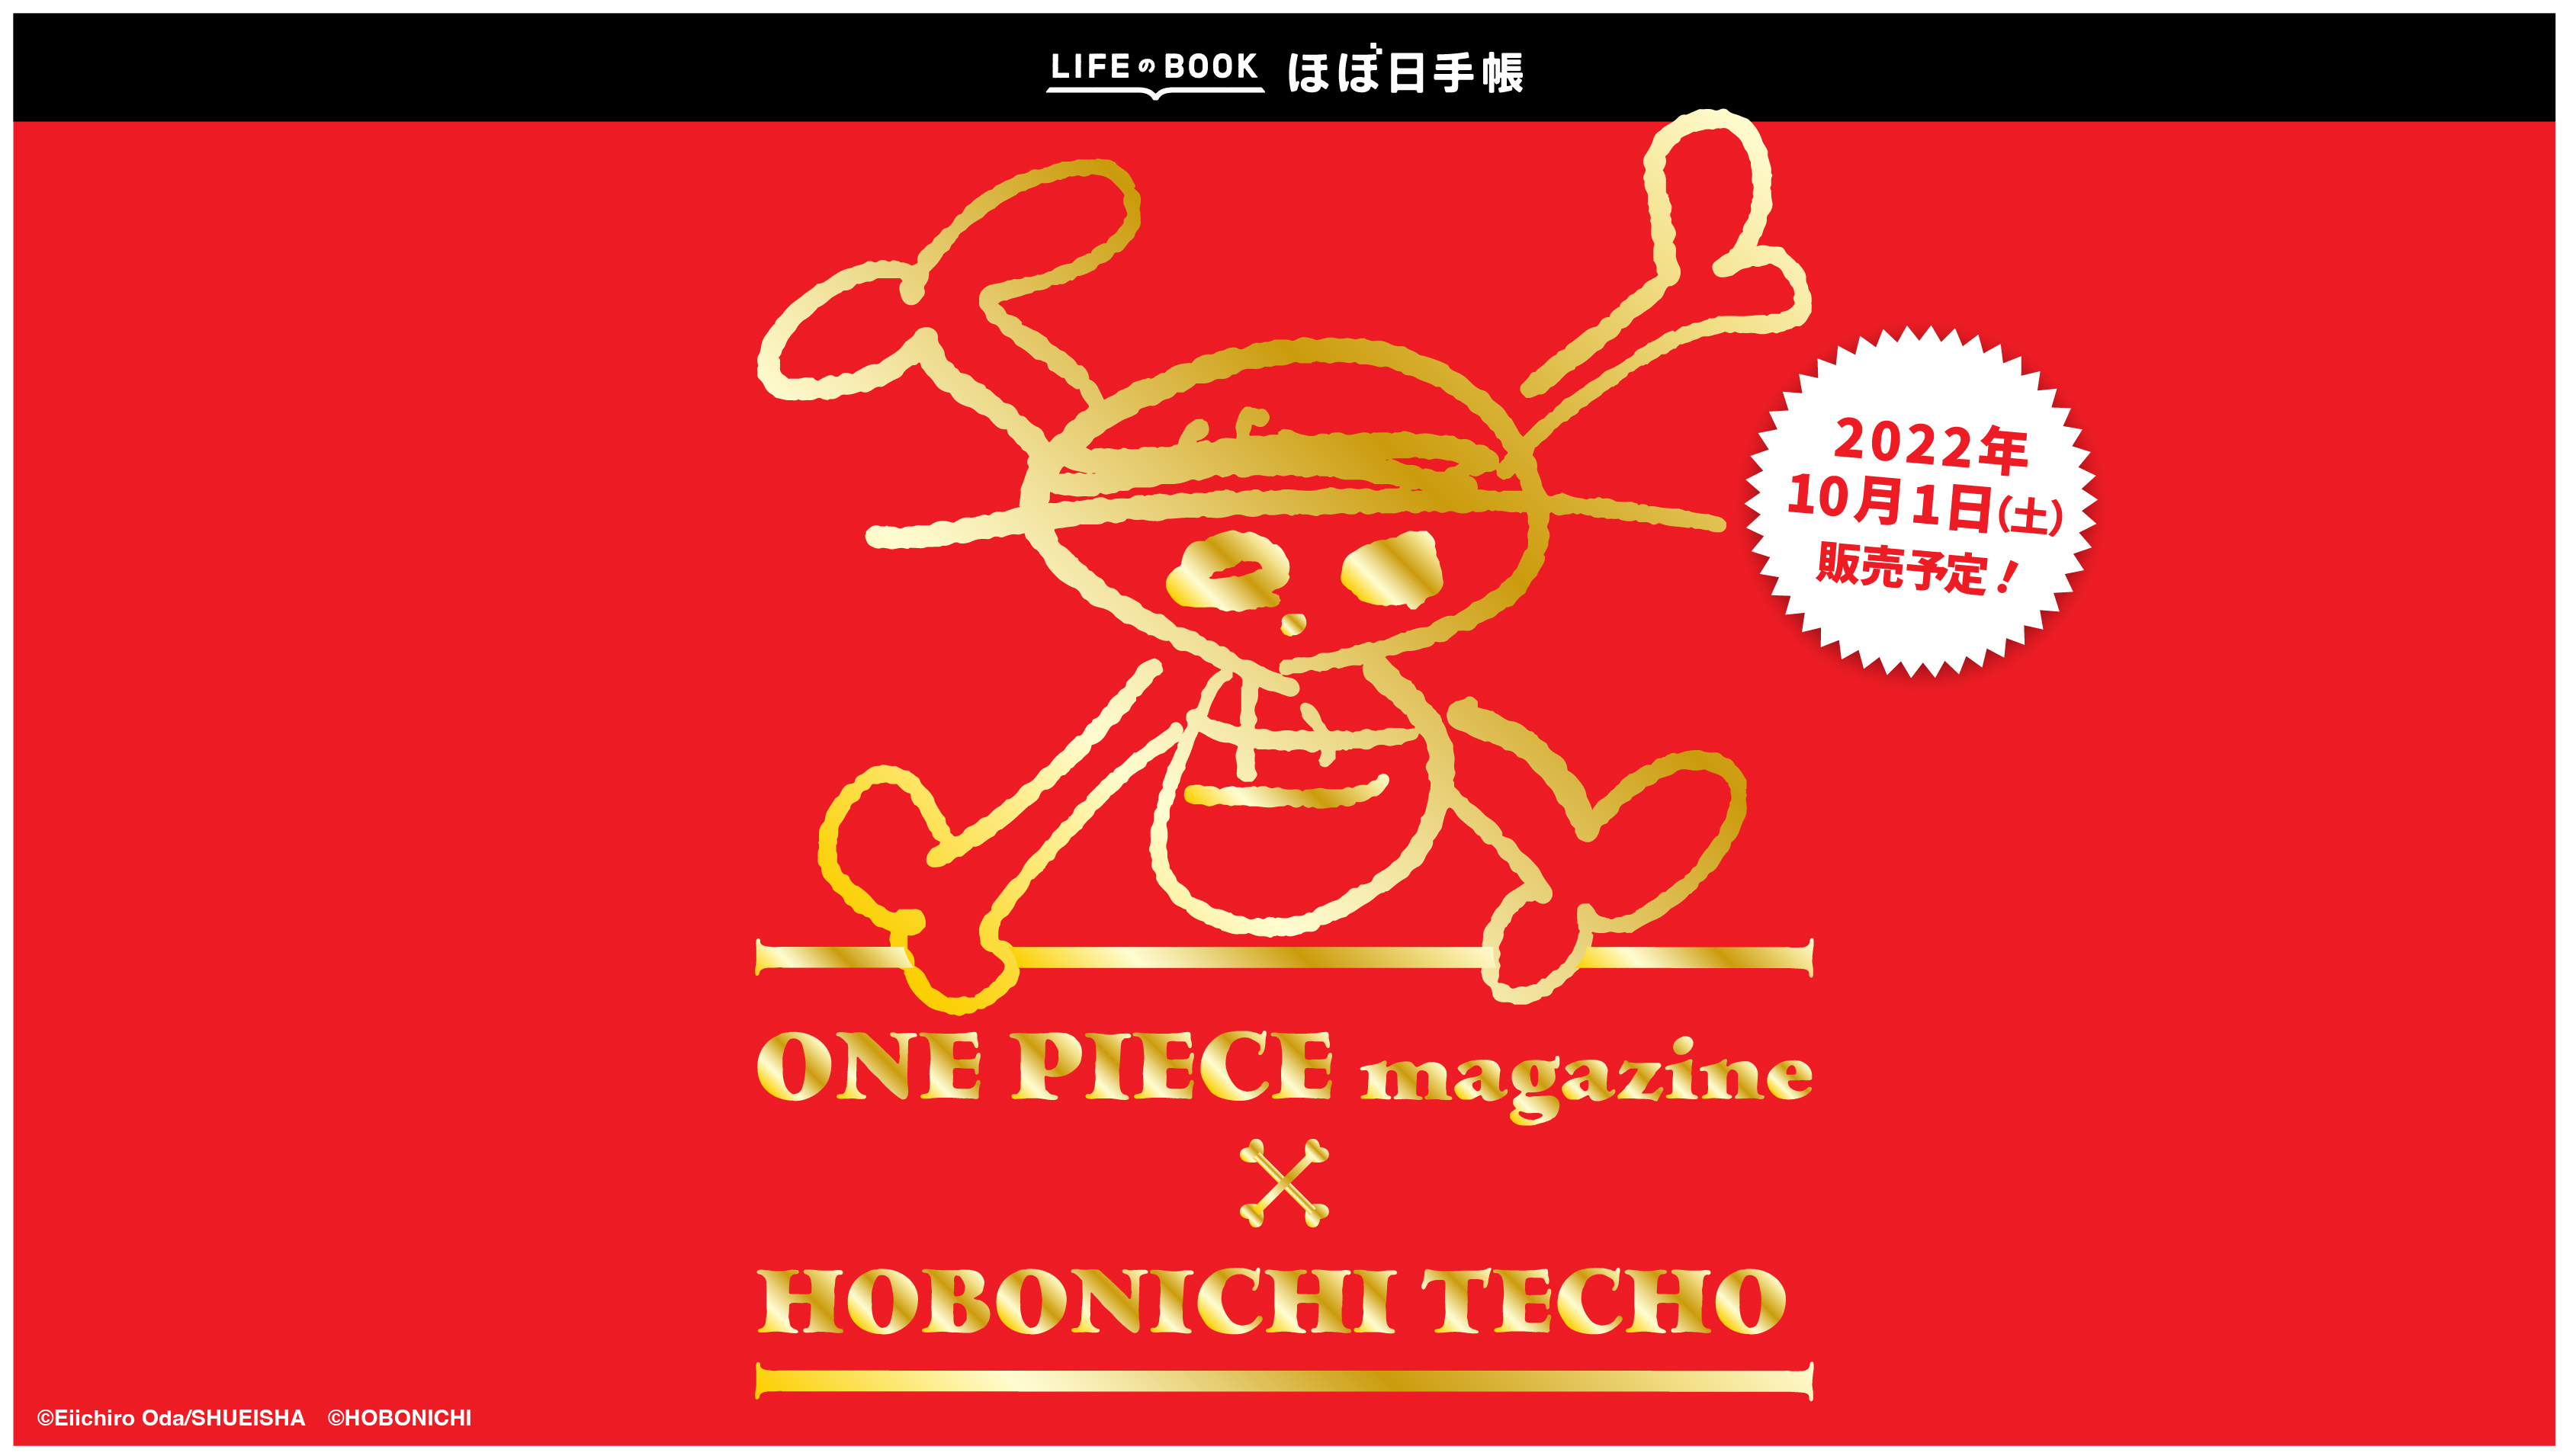 ムック『ONE PIECE magazine』×『ほぼ日手帳2023』 365の熱い言葉を ...